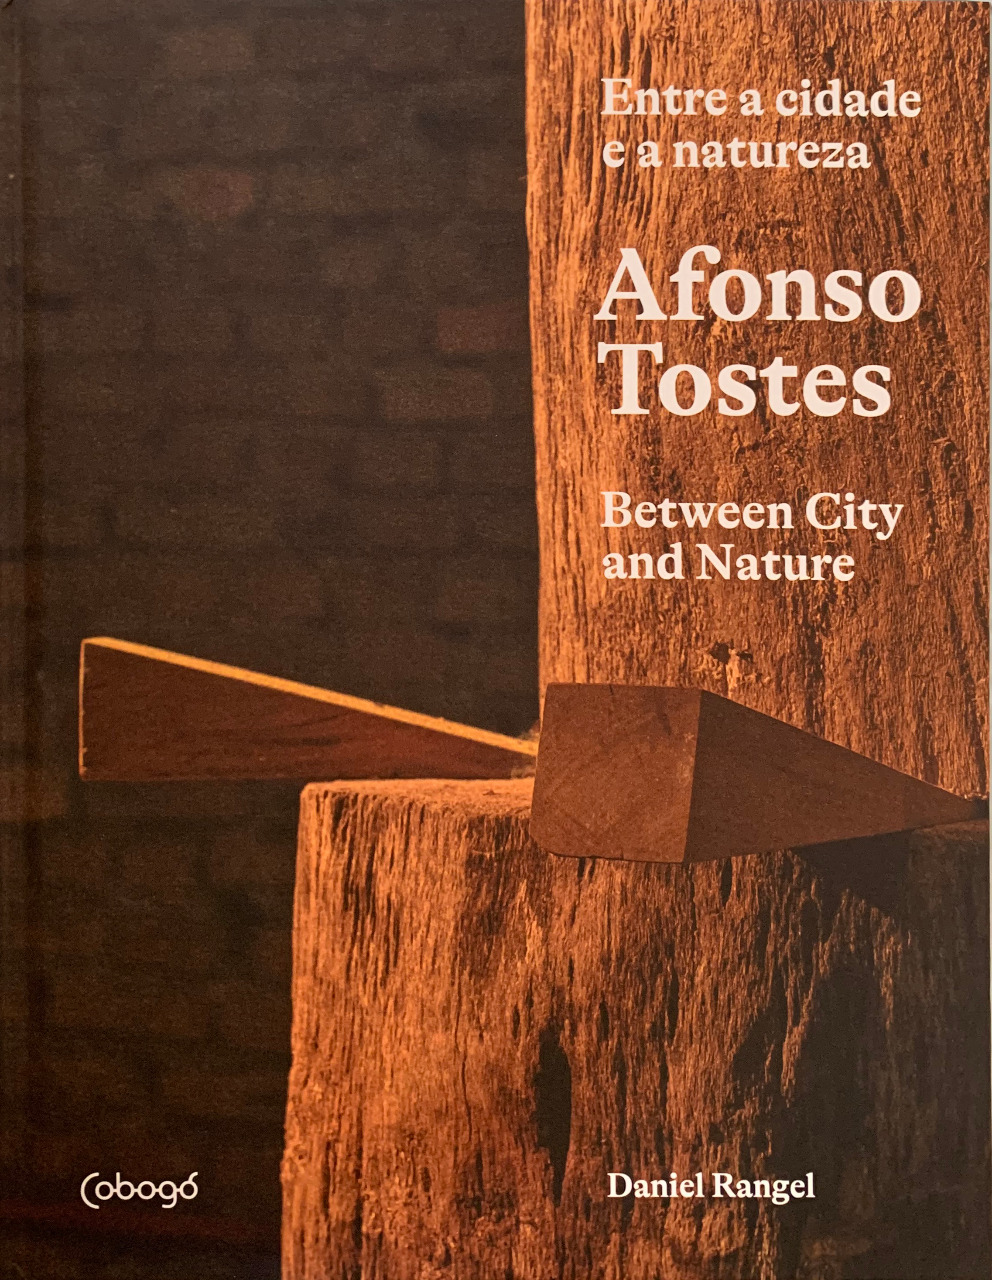 Libro "Afonso Tostes: Entre la ciudad y la naturaleza", cubierta. Divulgación.